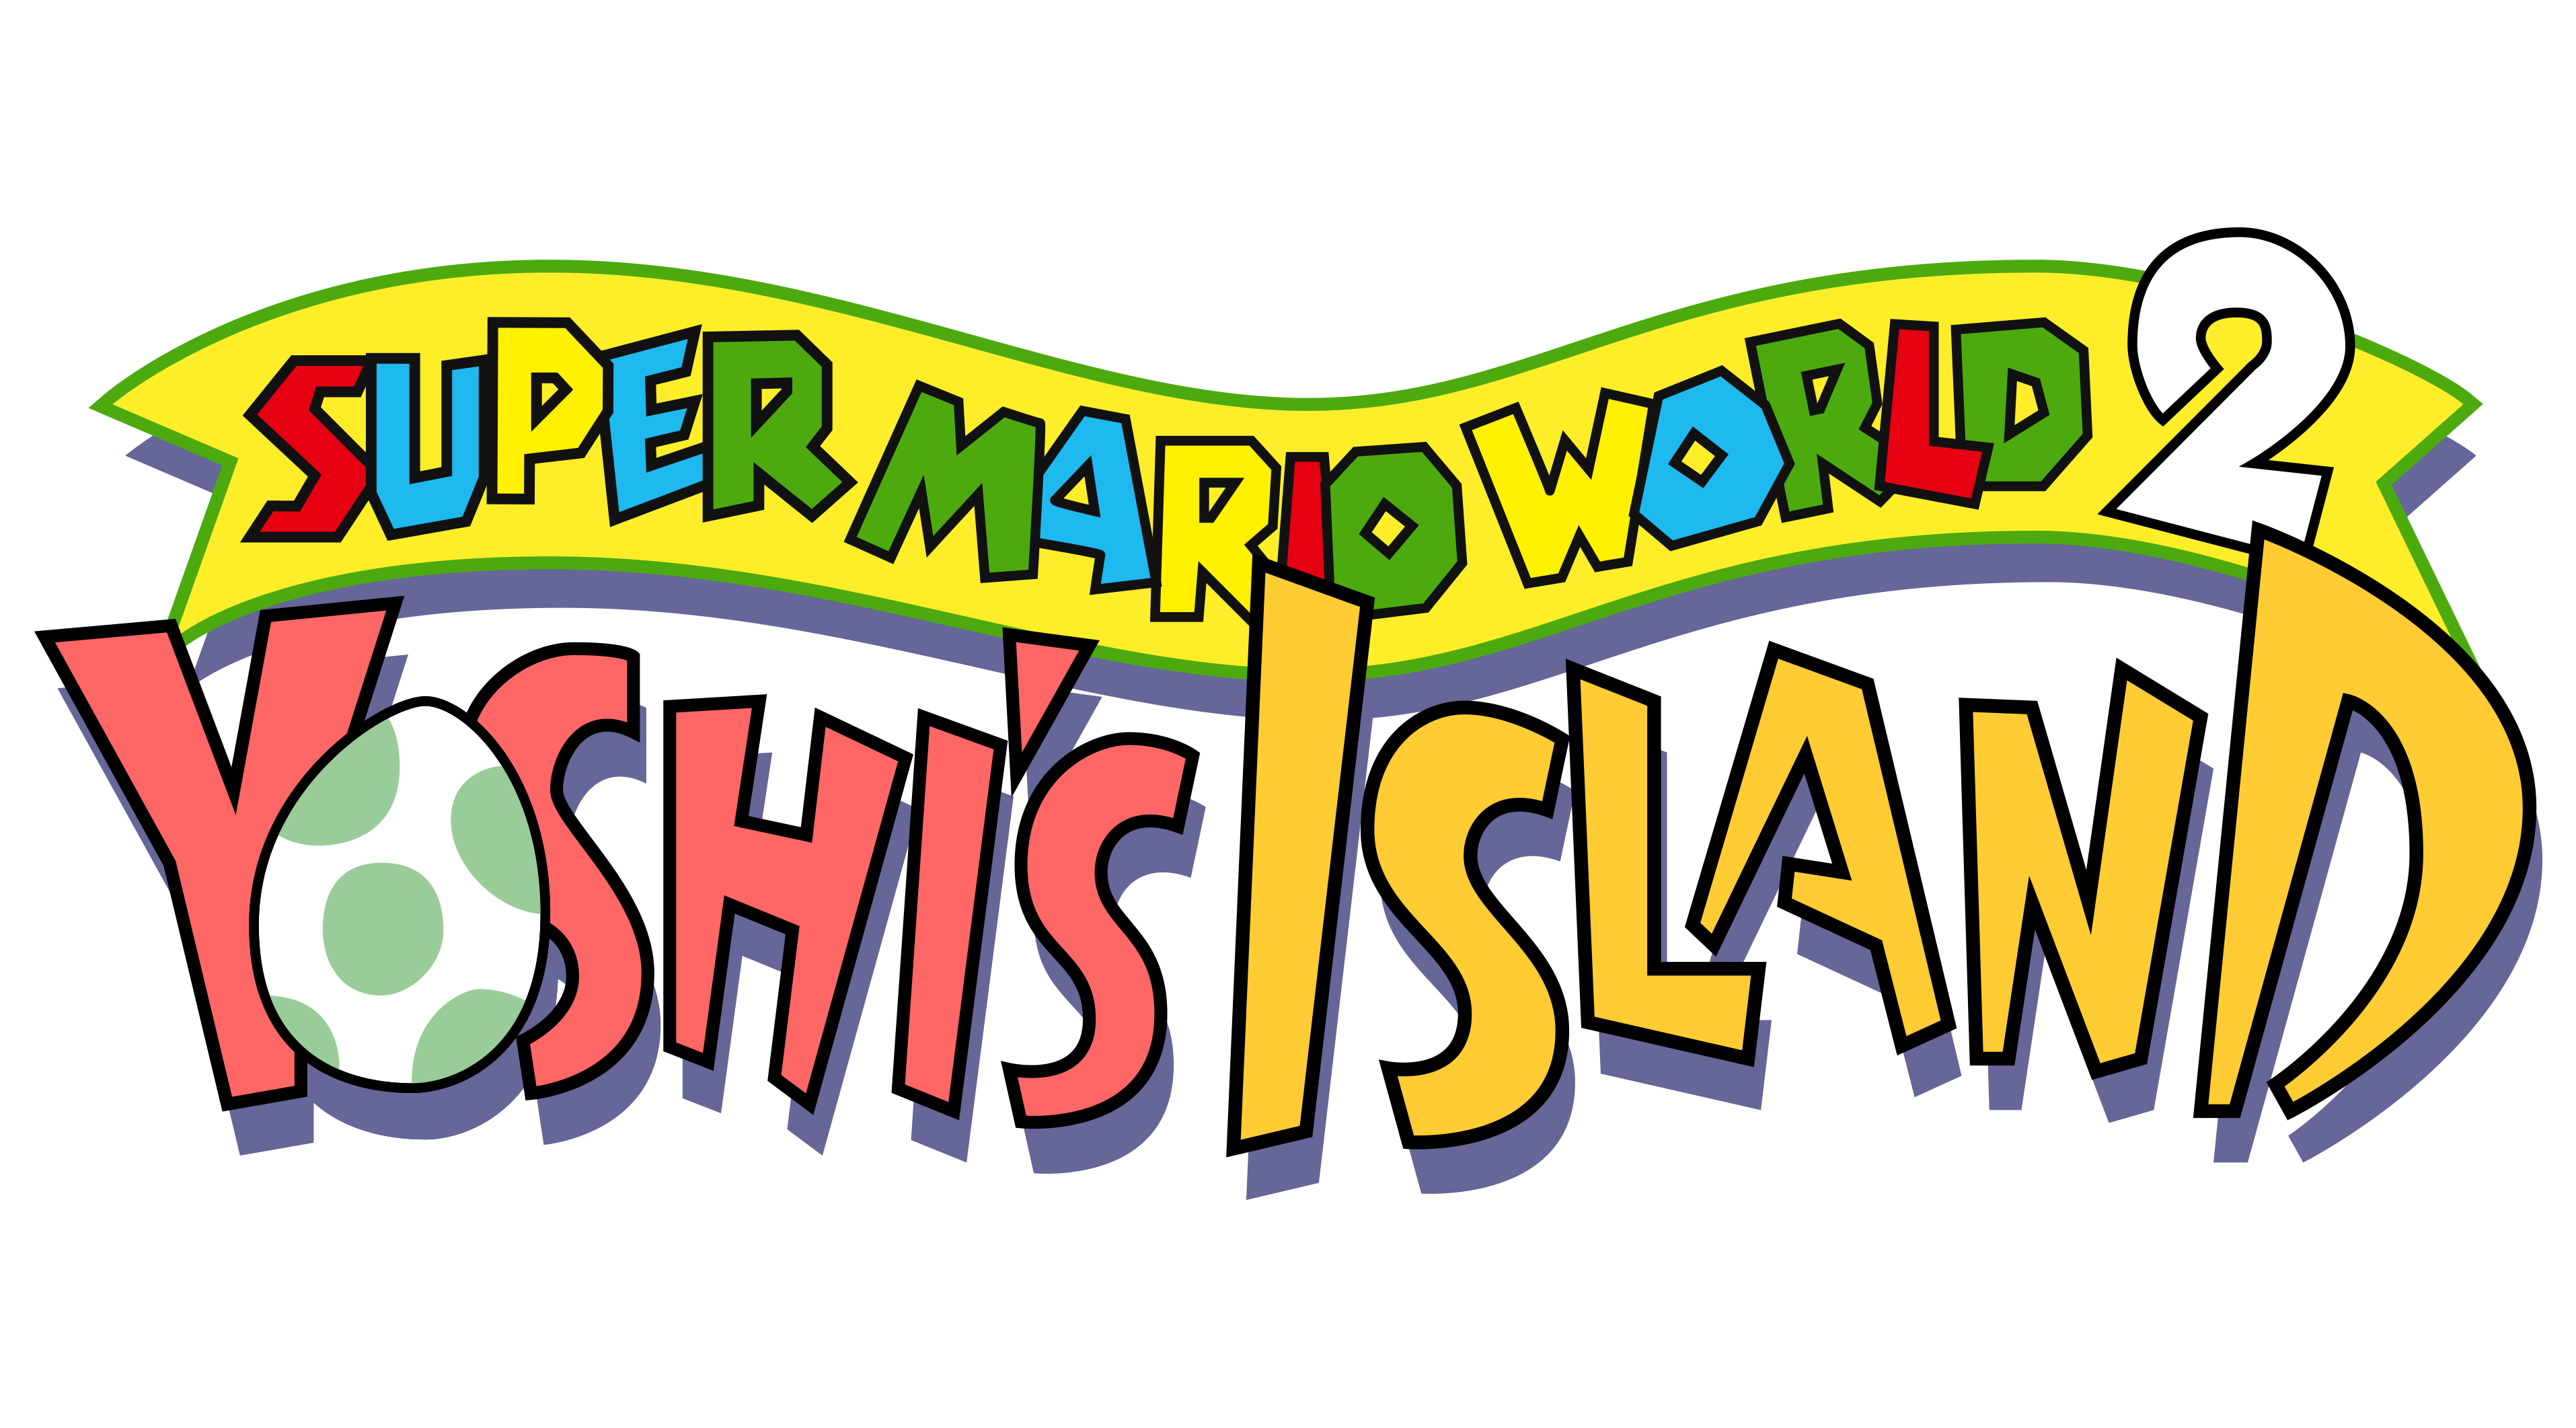 Super mario world. Super Mario World 2 Yoshis Island. Super Mario World 2 Snes. Super Mario World лого. Yoshi logo.